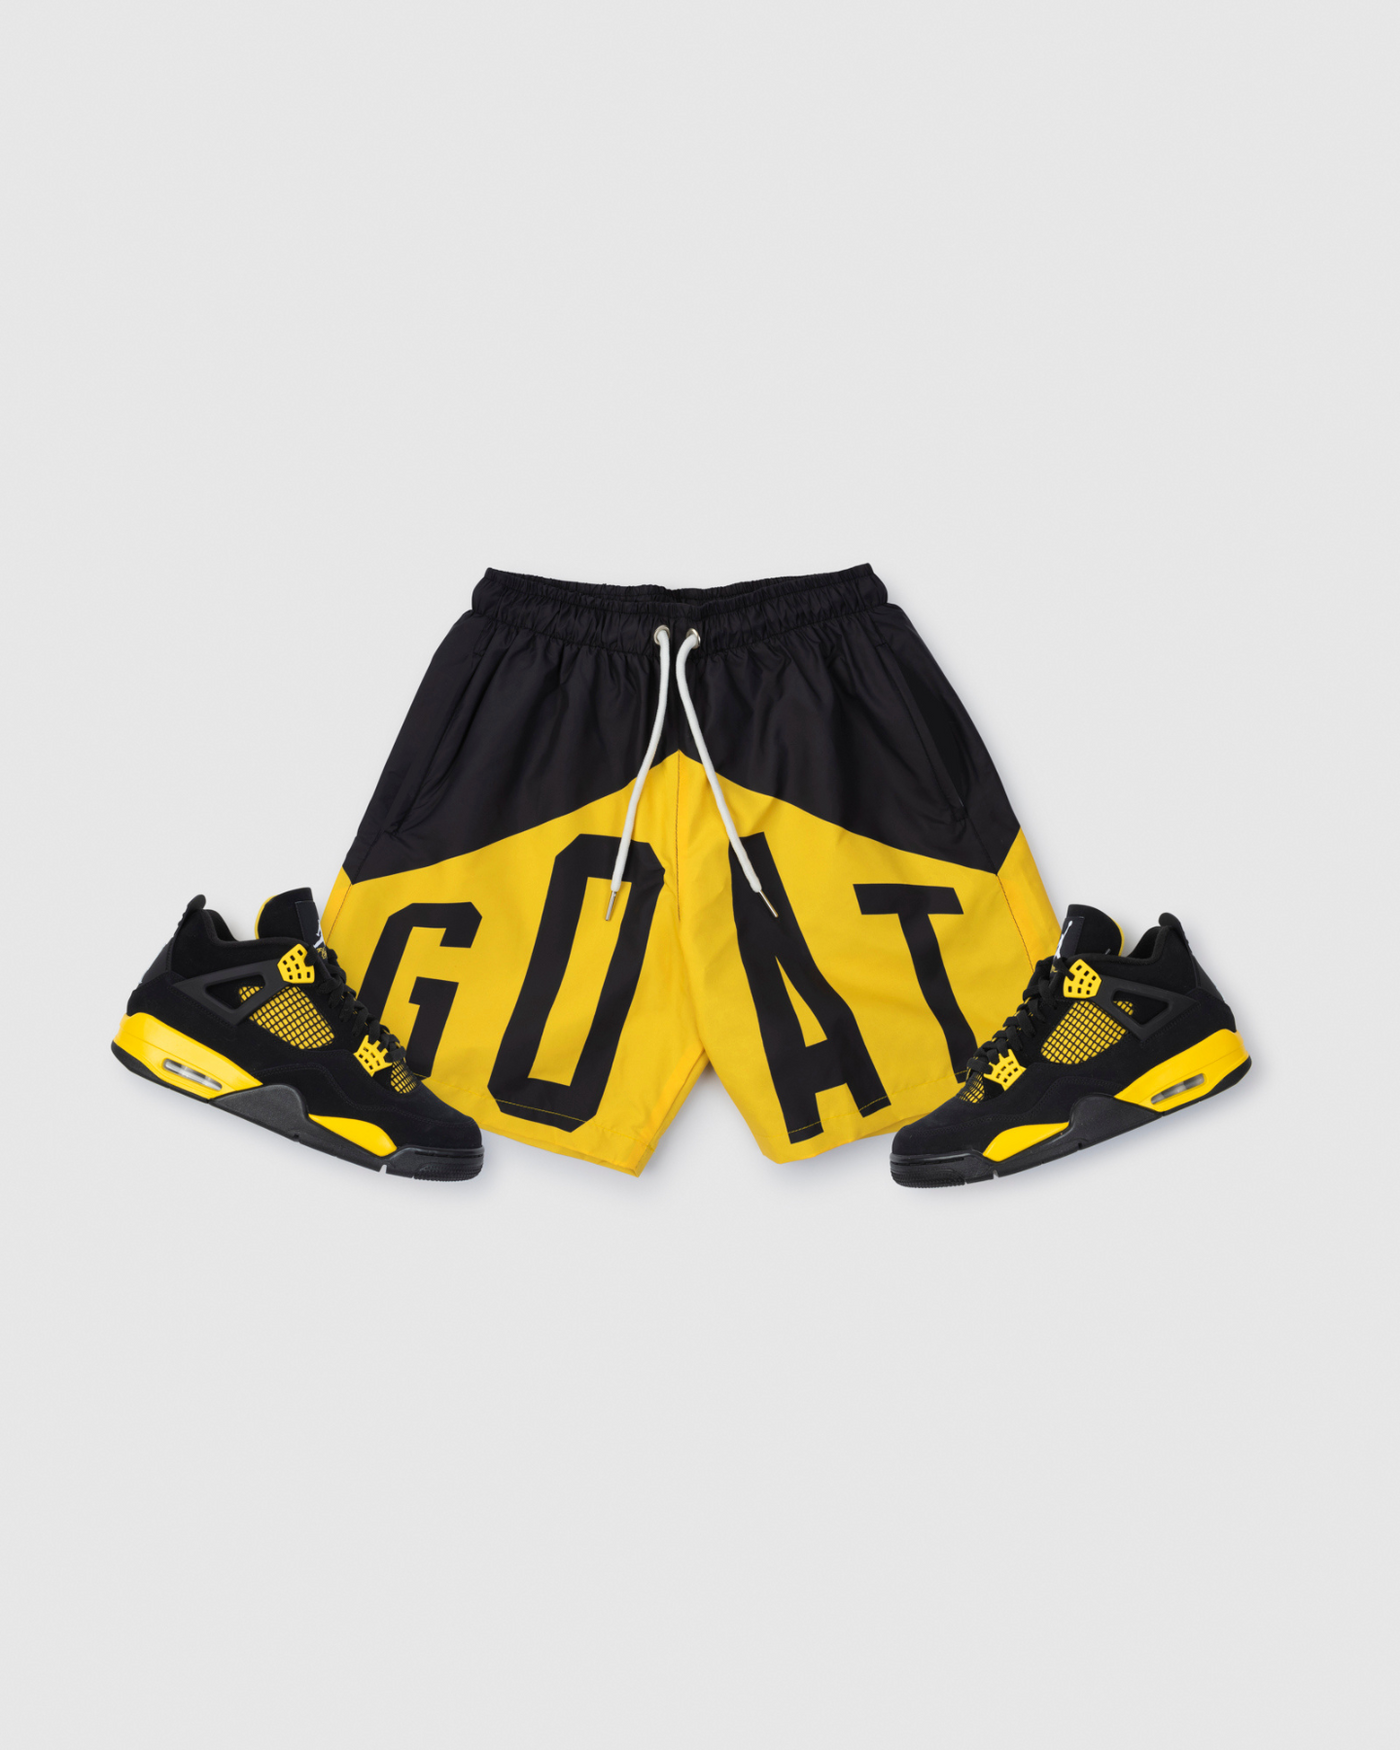 GOAT Big Arch Logo Shorts (Thunder)